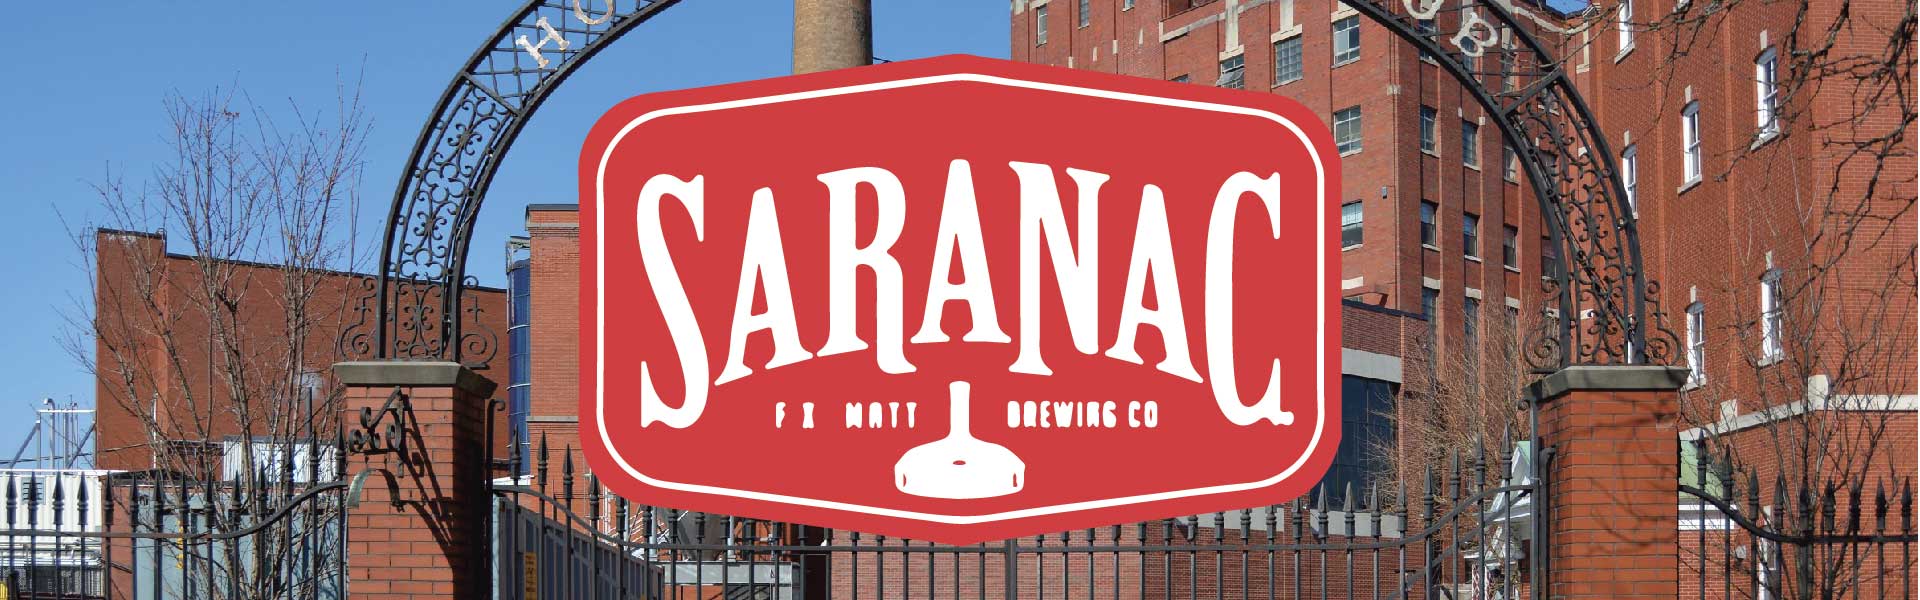 Saranac Brewery (F.X. Matt Brewing Company)